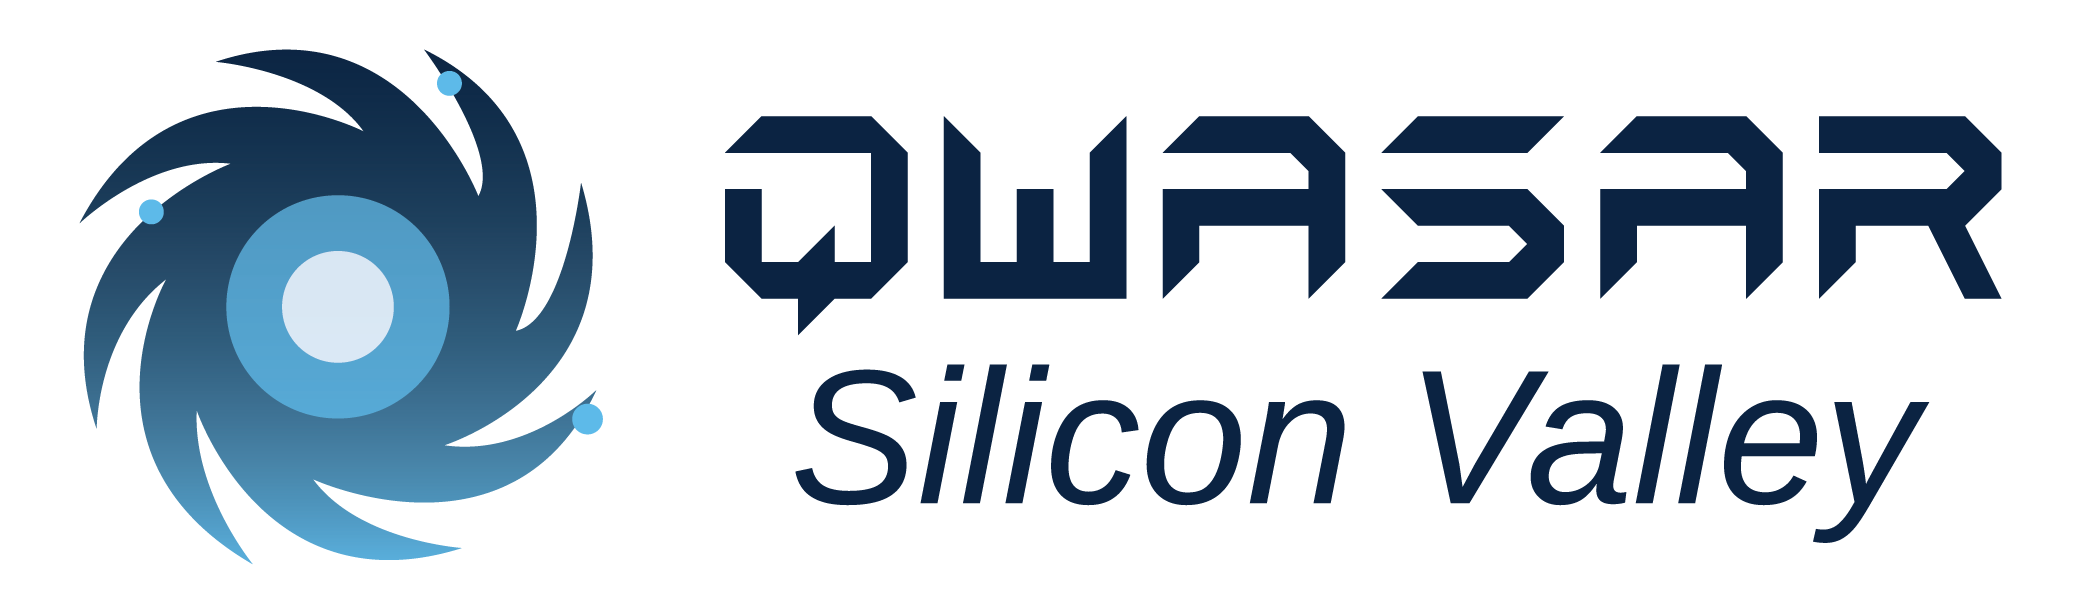 qwasar logo